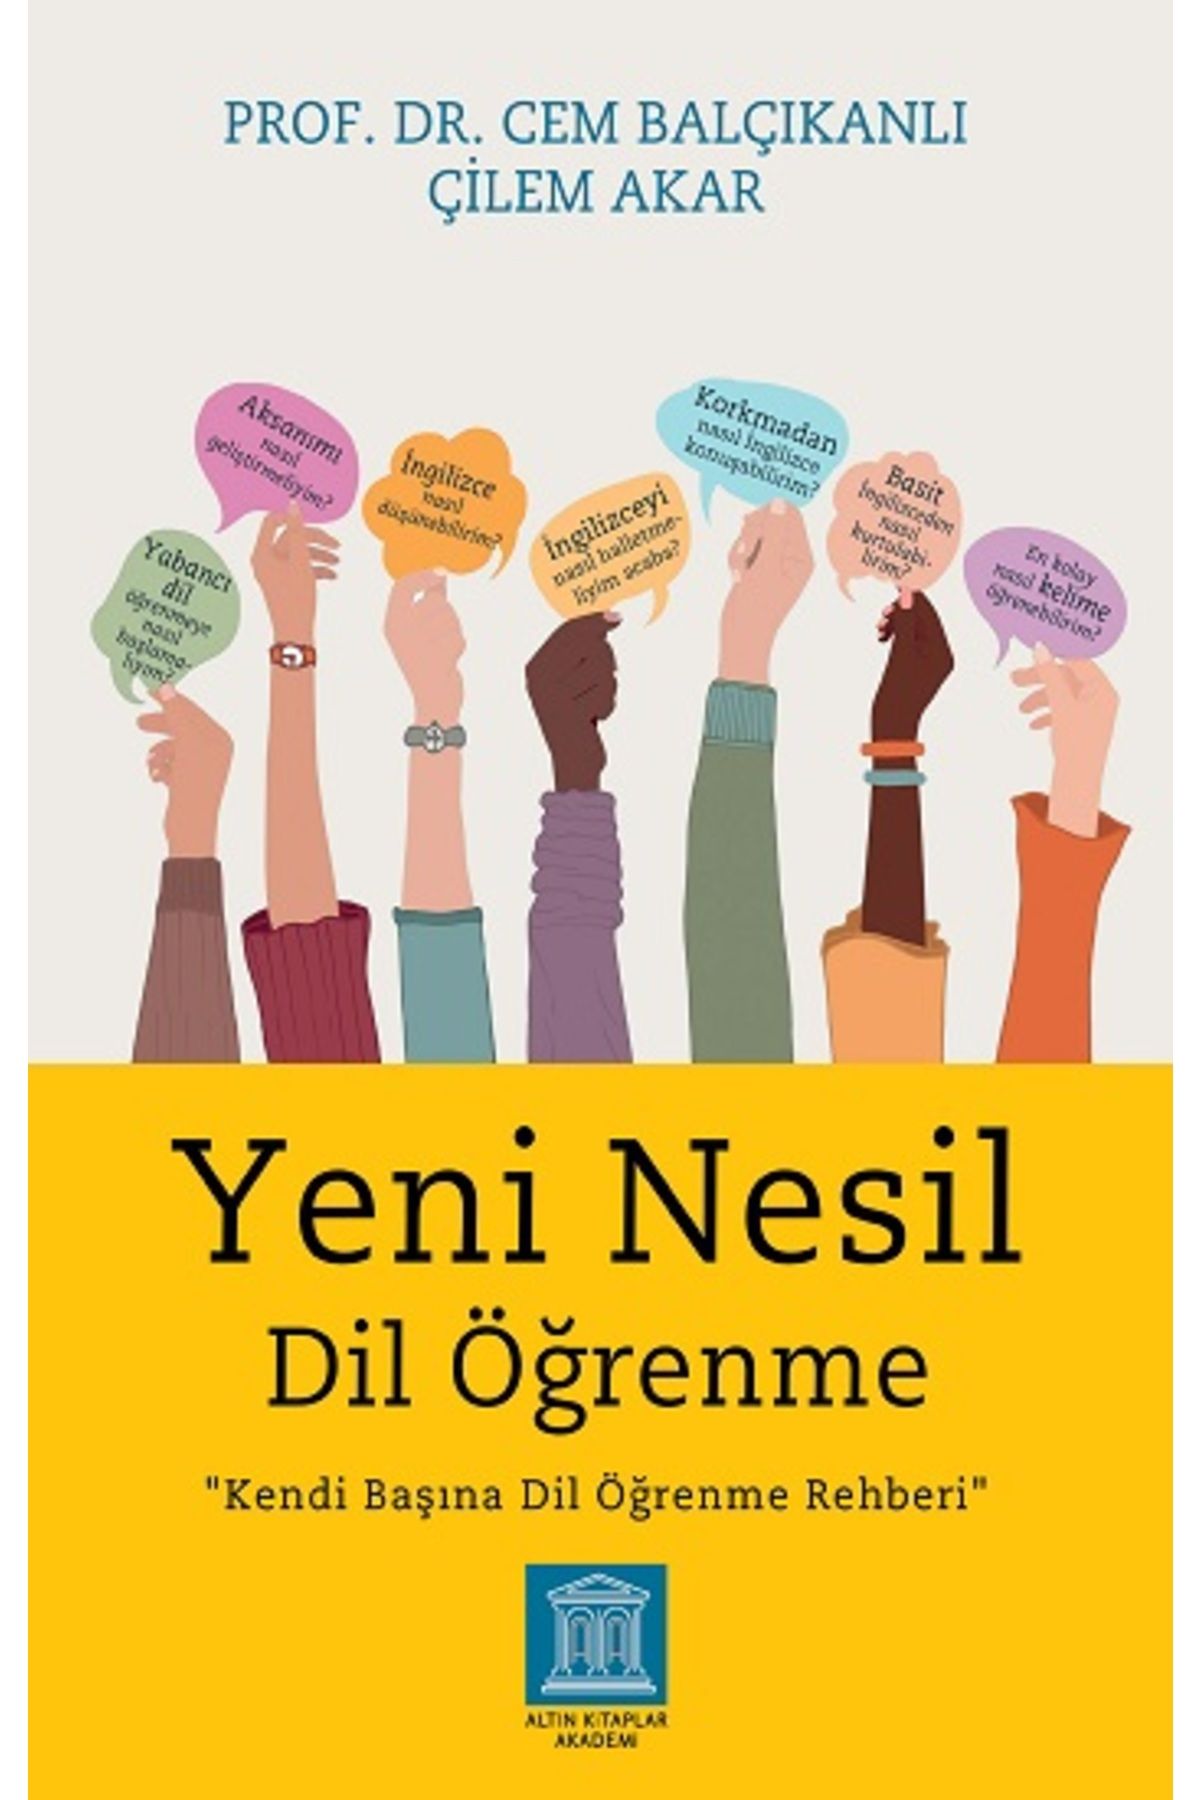 Altın Kitaplar Yeni Nesil Dil Öğrenme kitabı / Cem Balçıkanlı & Çilem Akar / Altın Kitaplar Akademi